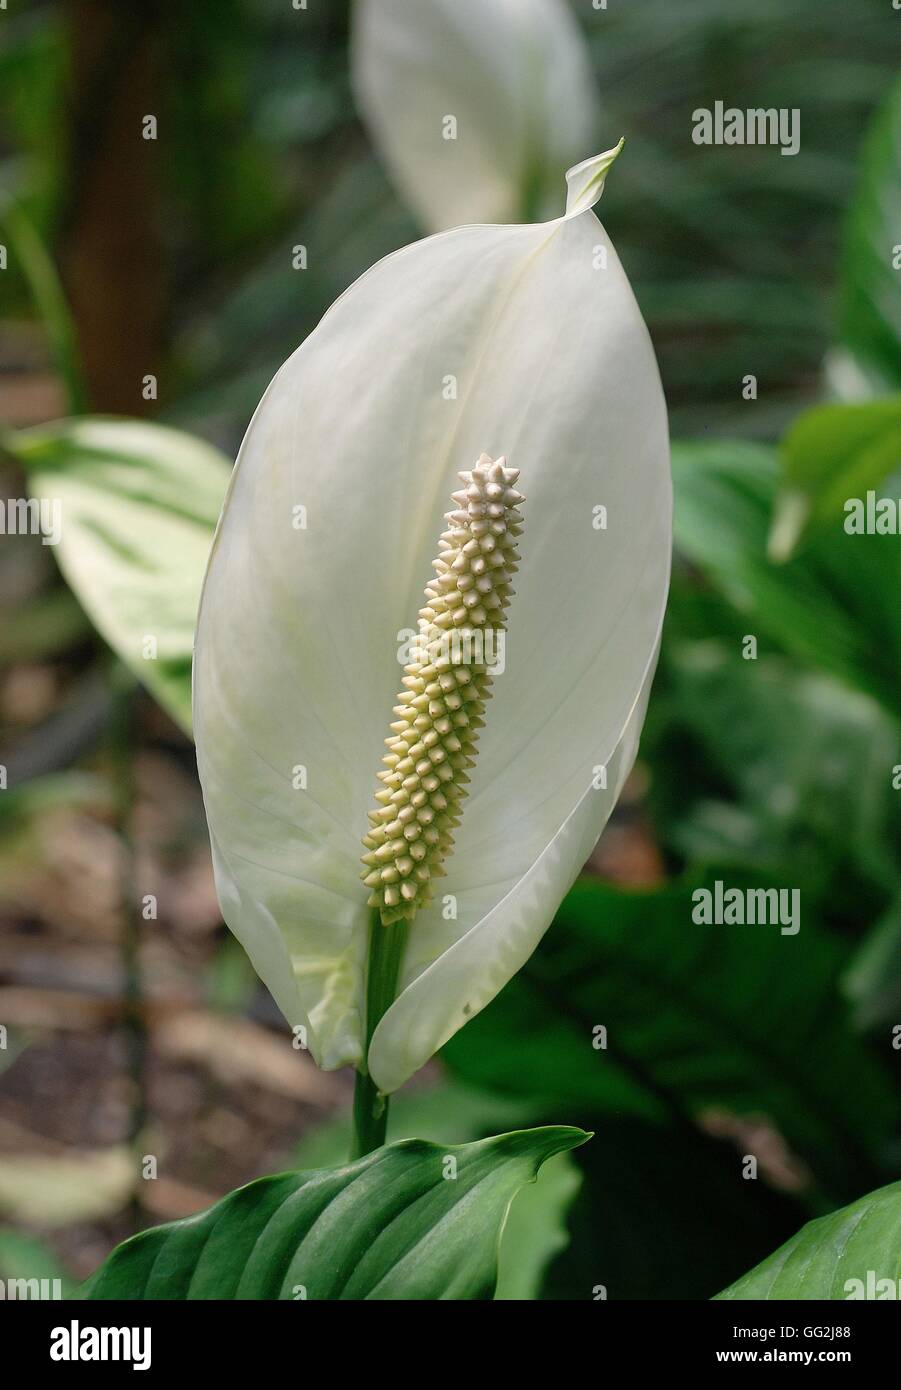 Spathiphyllum floribundum (Peace lily) Stock Photo